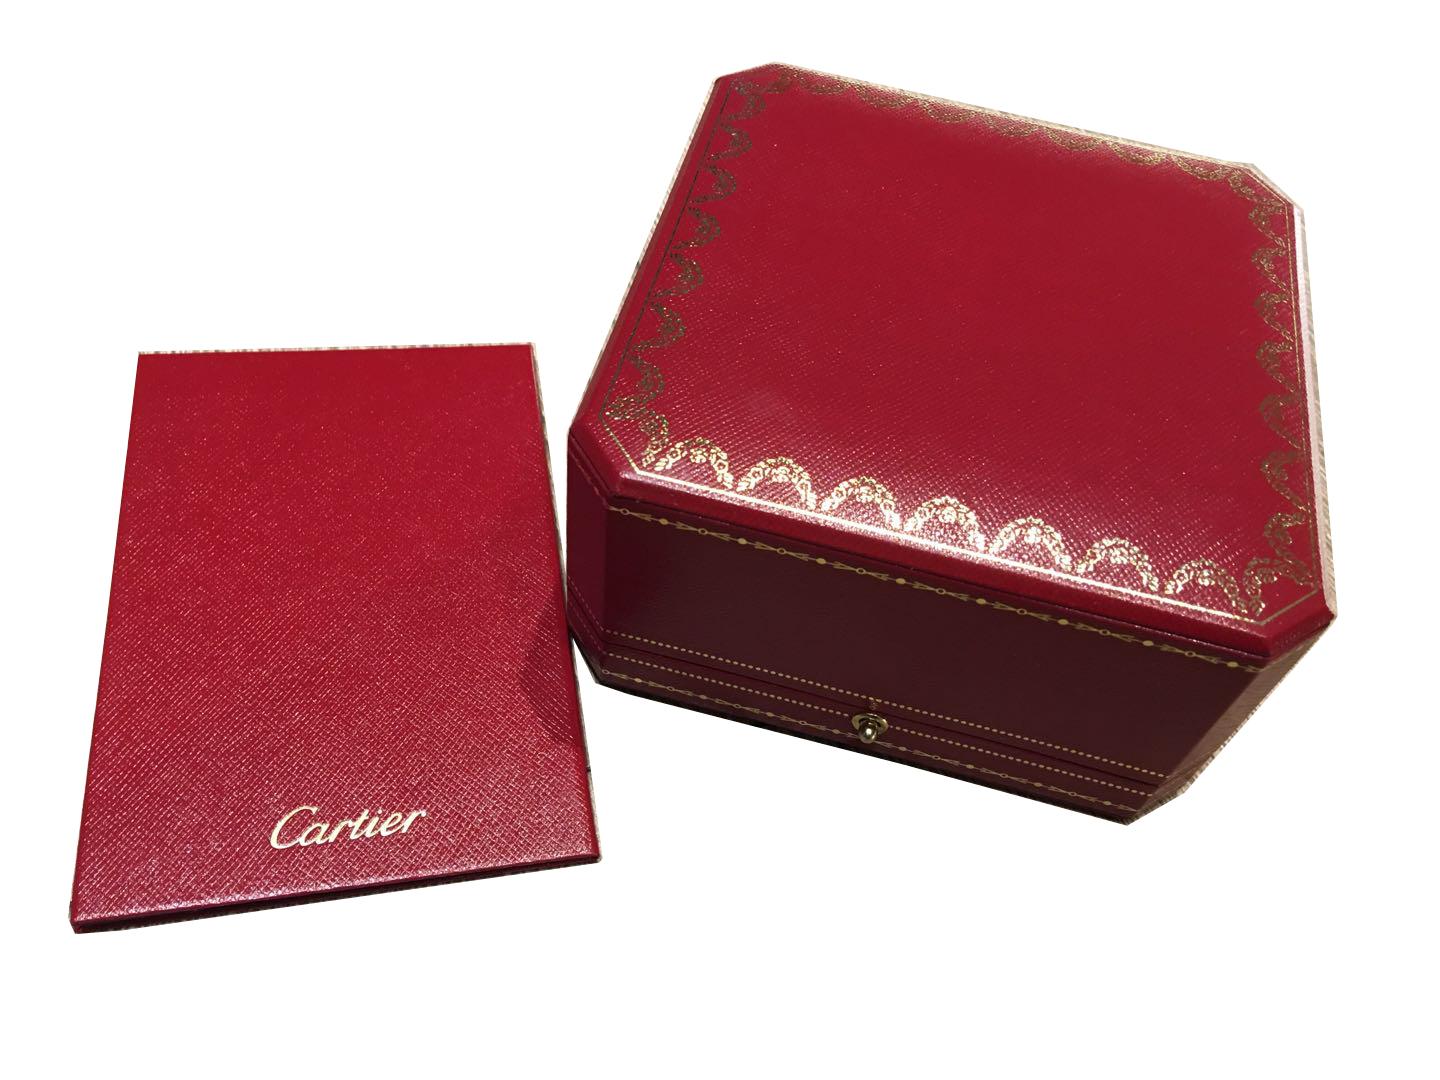 Cartier Panthère de Bracelet, Gold Lacquer, Diamond, Tsavorite Garnets, Onyx For Sale 7